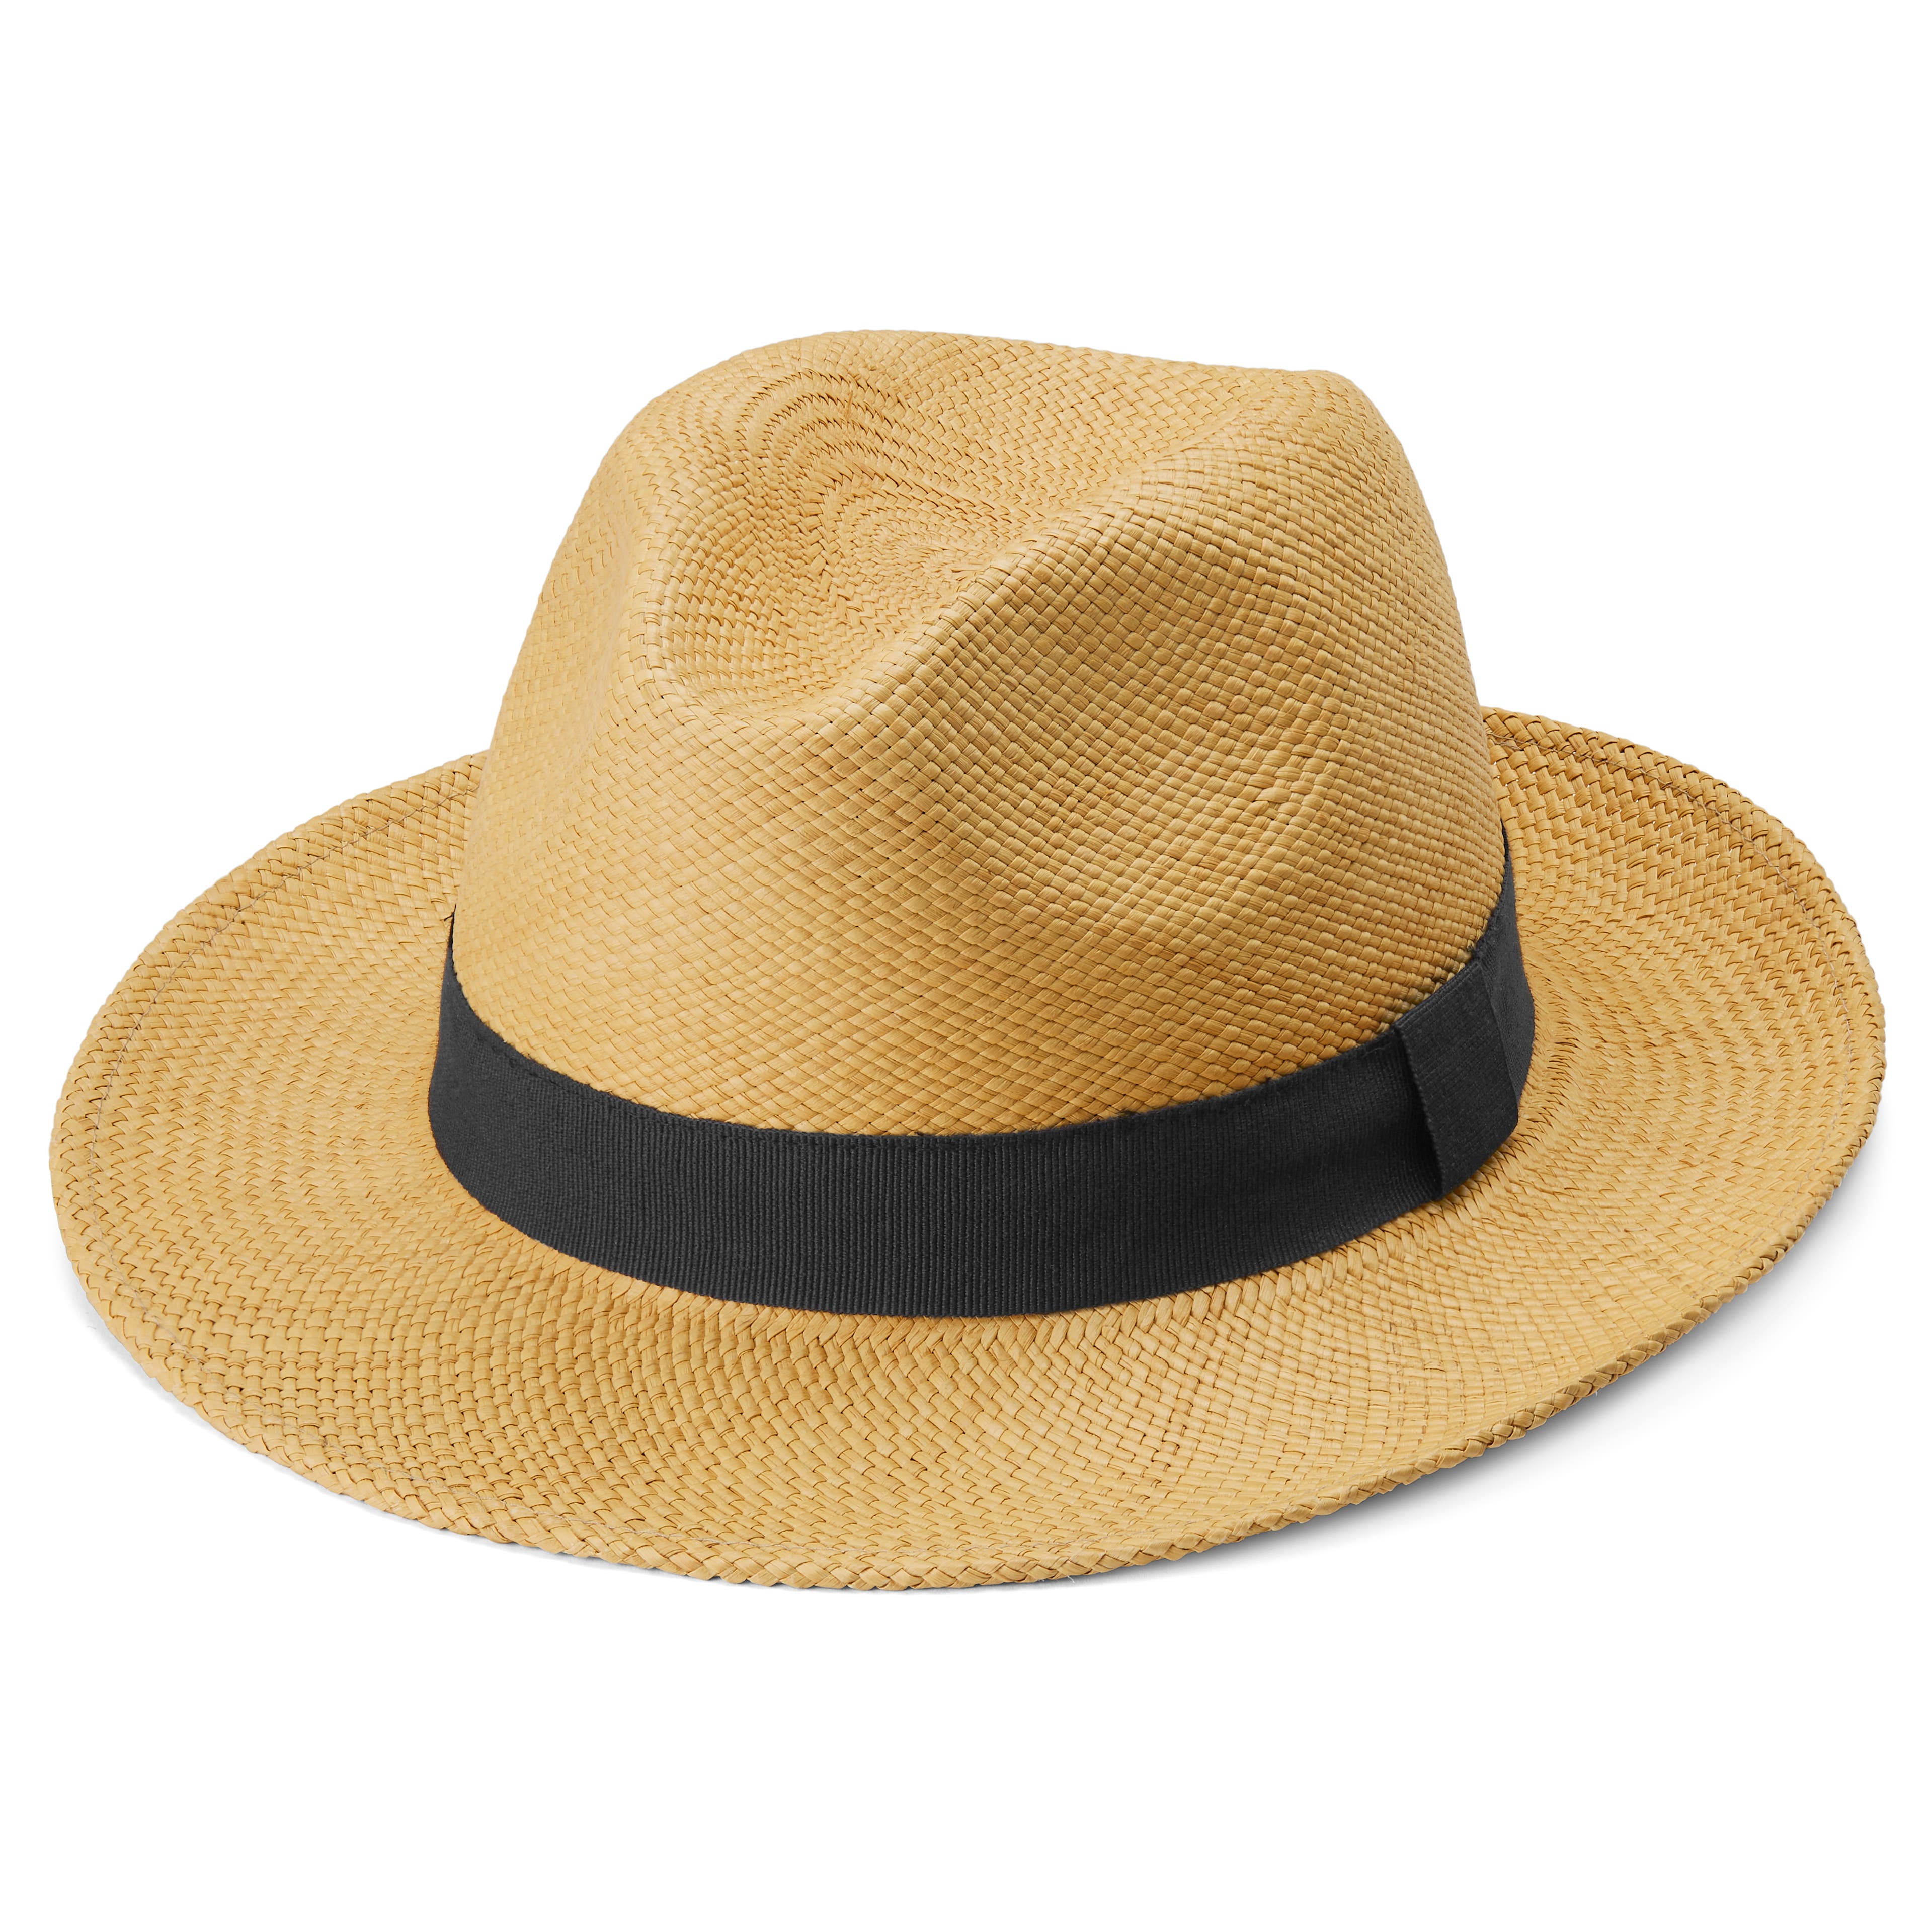 Piero bledohnedý klobúk Moda s tmavomodrým popruhom v štýle Panama 